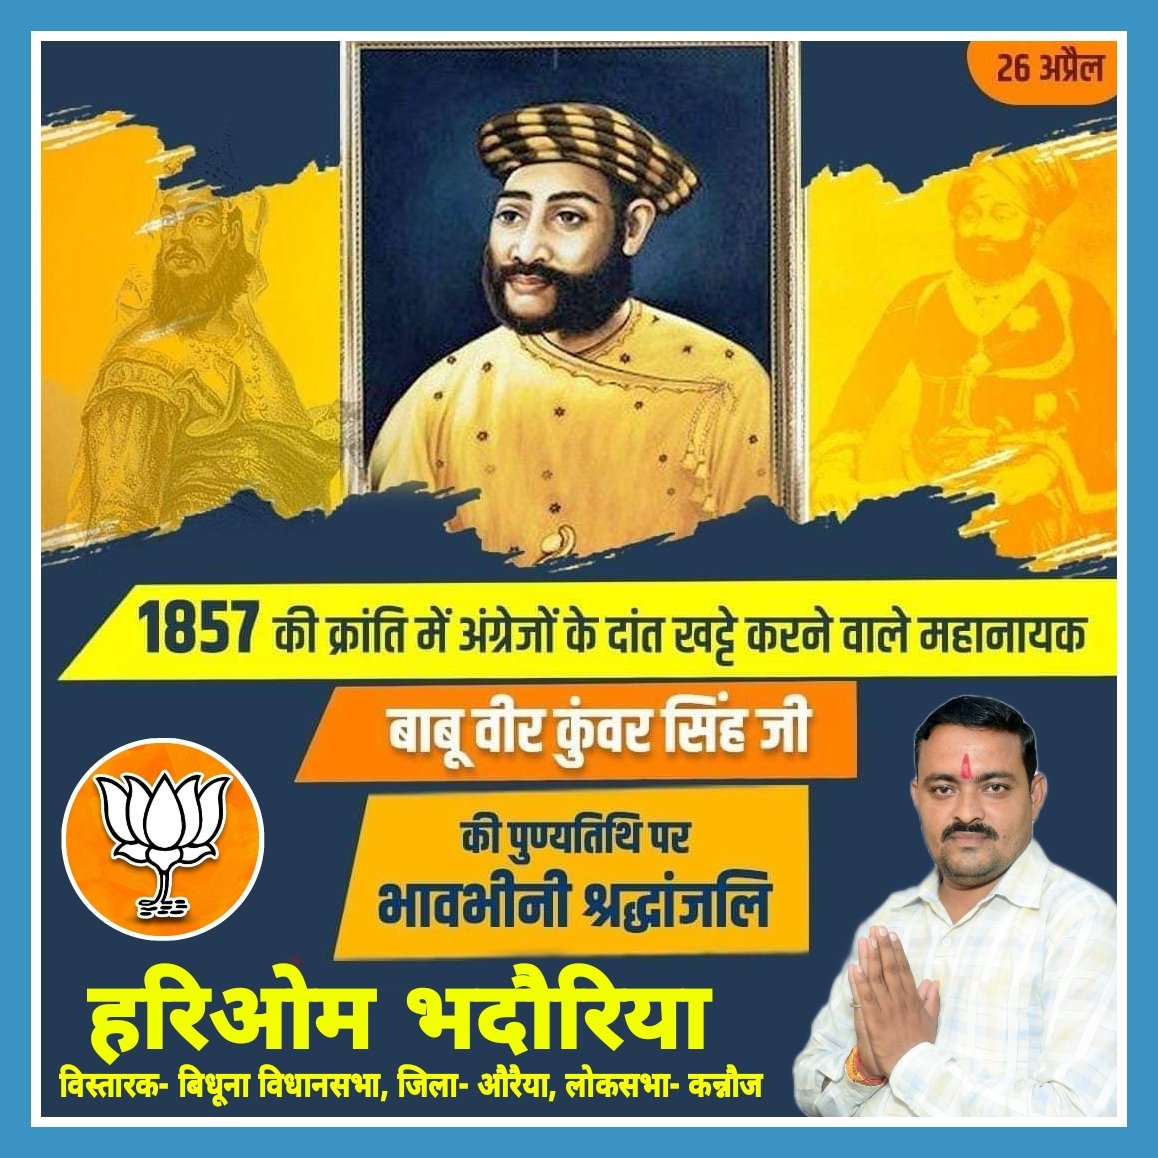 प्रथम भारतीय स्वतंत्रता संग्राम के महानायक, महान योद्धा एवं अन्याय विरोधी महापुरुष #बाबू_वीर_कुंवर_सिंह जी की #पुण्यतिथि पर सादर नमन। 

1857 की क्रांति में अंग्रेजों के दांत खट्टे कर उन्होंने वीरता की मिसाल पेश की थी।

#VeerKunwarSingh #BabuVeerKunwarSingh